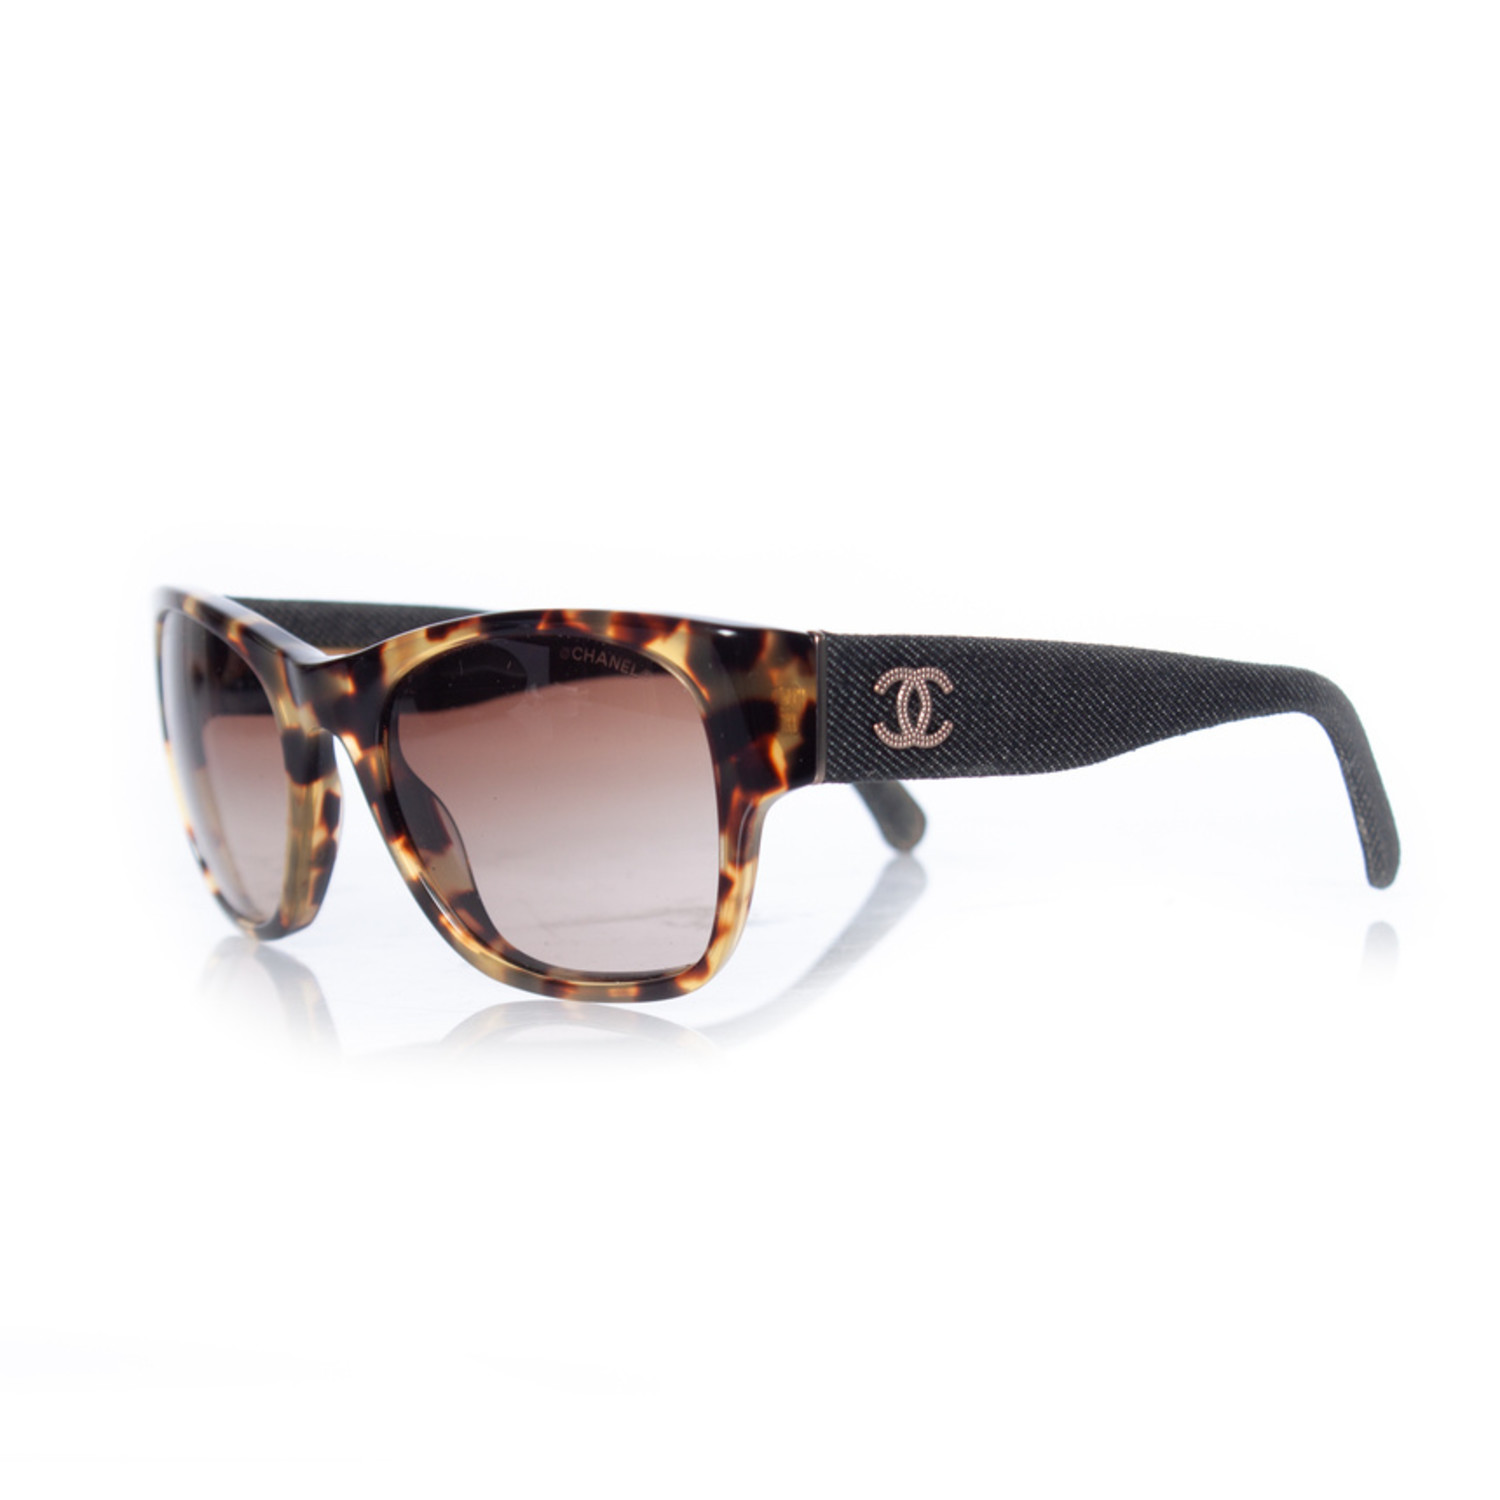 Chanel, Tortoise and denim sunglasses - Unique Designer Pieces